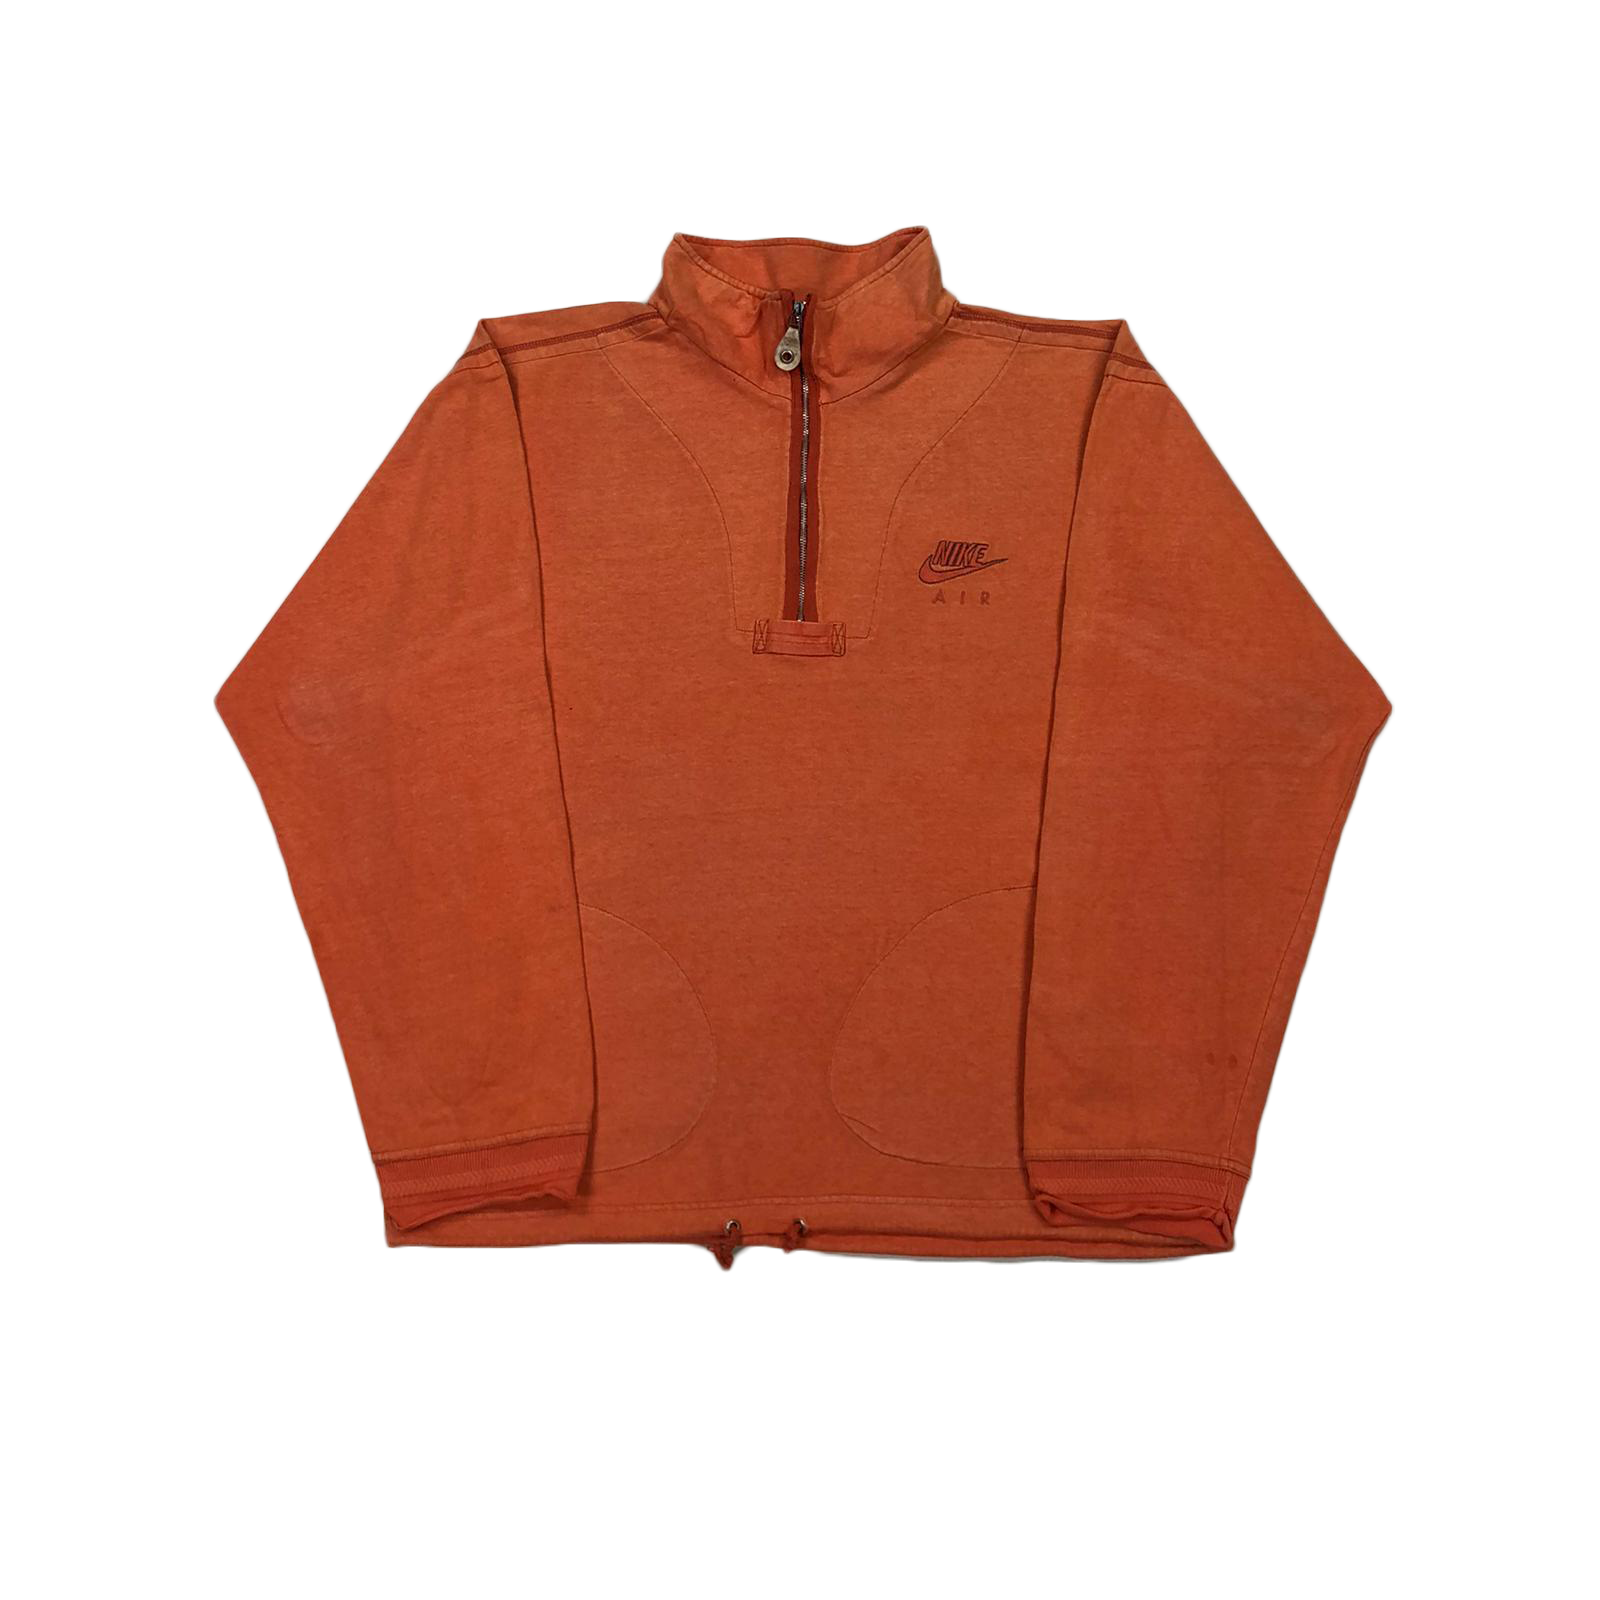 90's Nike Air 1/4 zip sweatshirt